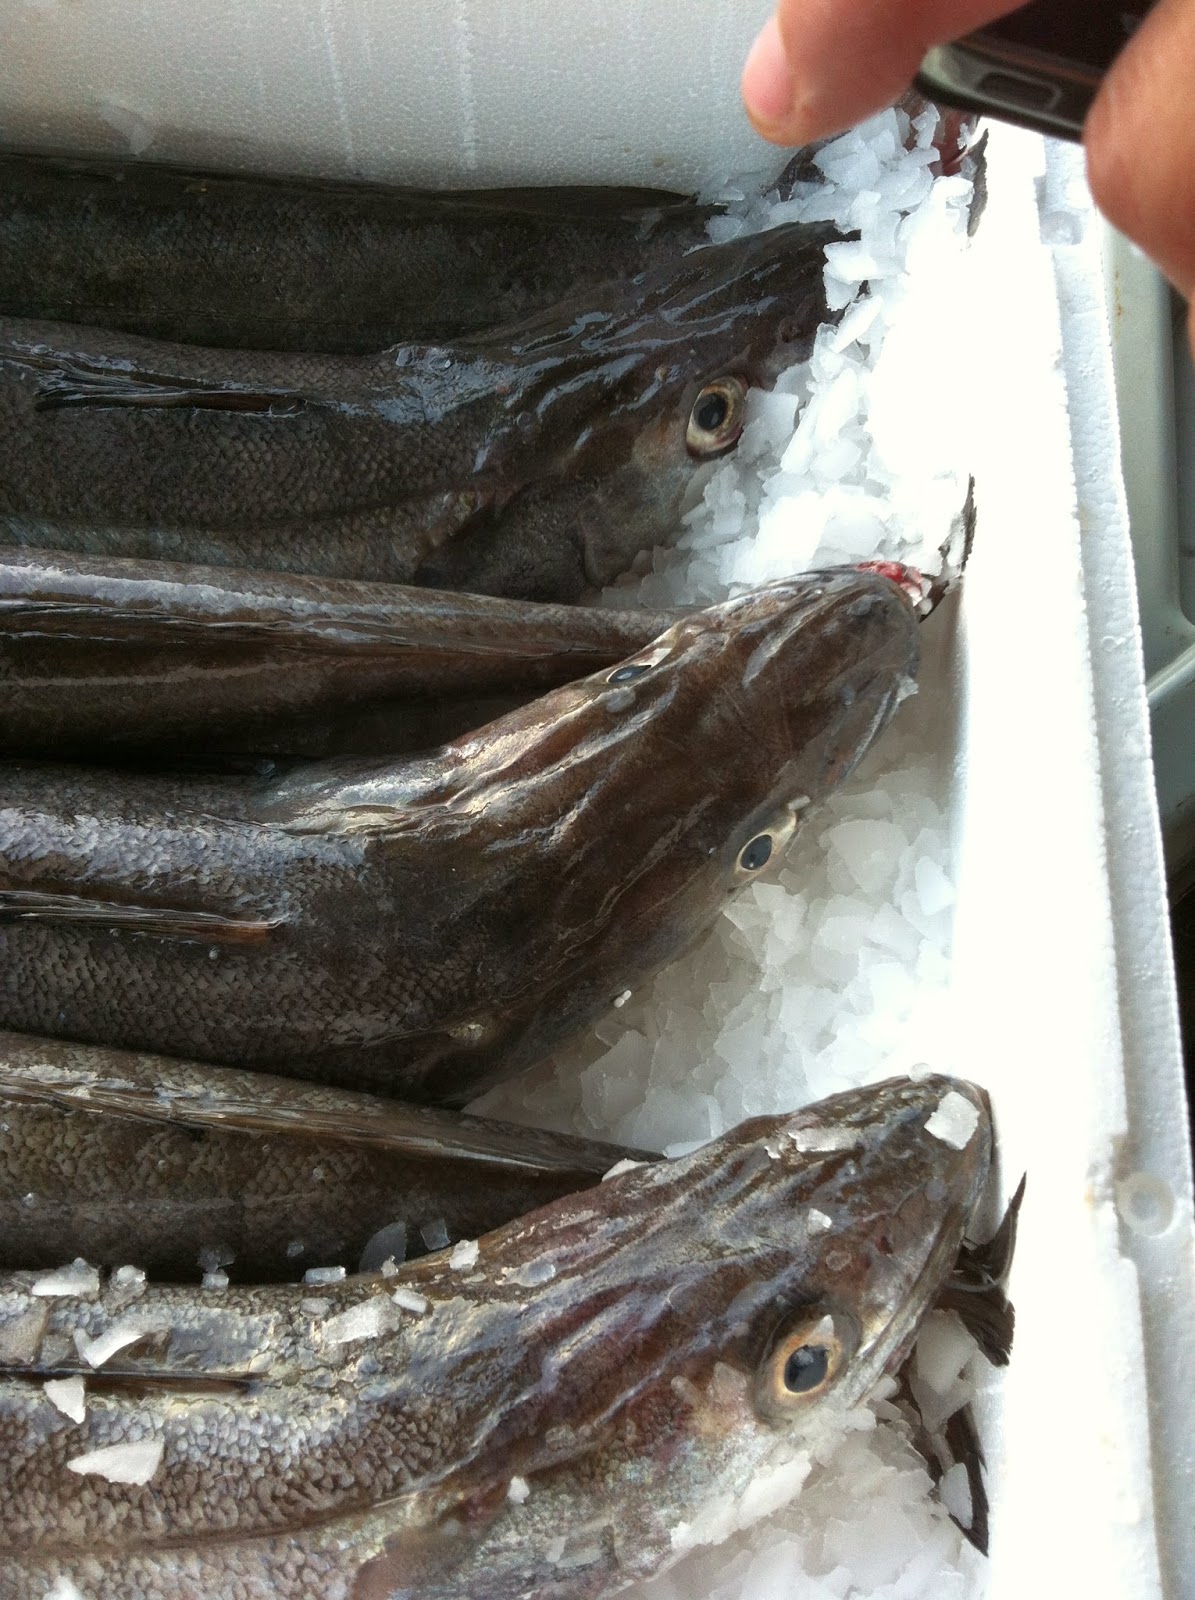 Aprende a diferenciar el pescado fresco del que no lo es - Mariscos O Grove